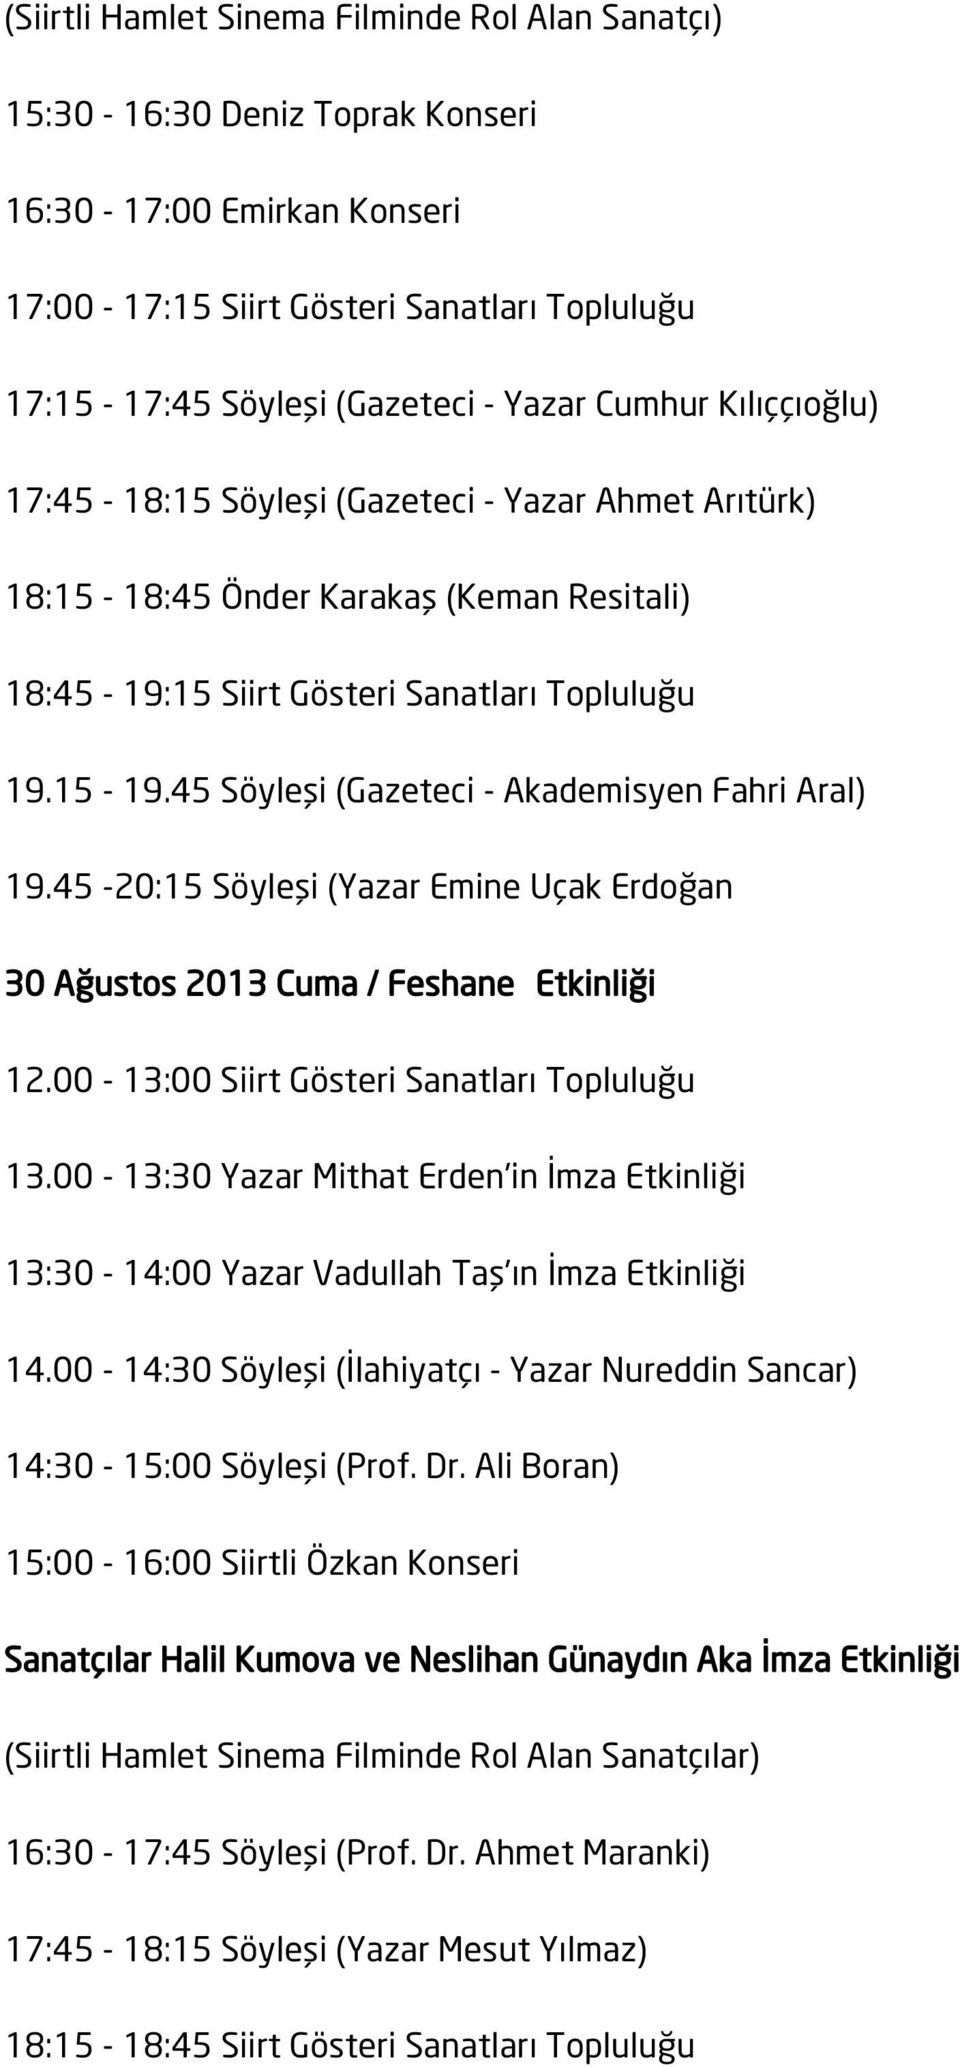 45 Söyleşi (Gazeteci - Akademisyen Fahri Aral) 19.45-20:15 Söyleşi (Yazar Emine Uçak Erdoğan 30 Ağustos 2013 Cuma / Feshane Etkinliği 12.00-13:00 Siirt Gösteri Sanatları Topluluğu 13.